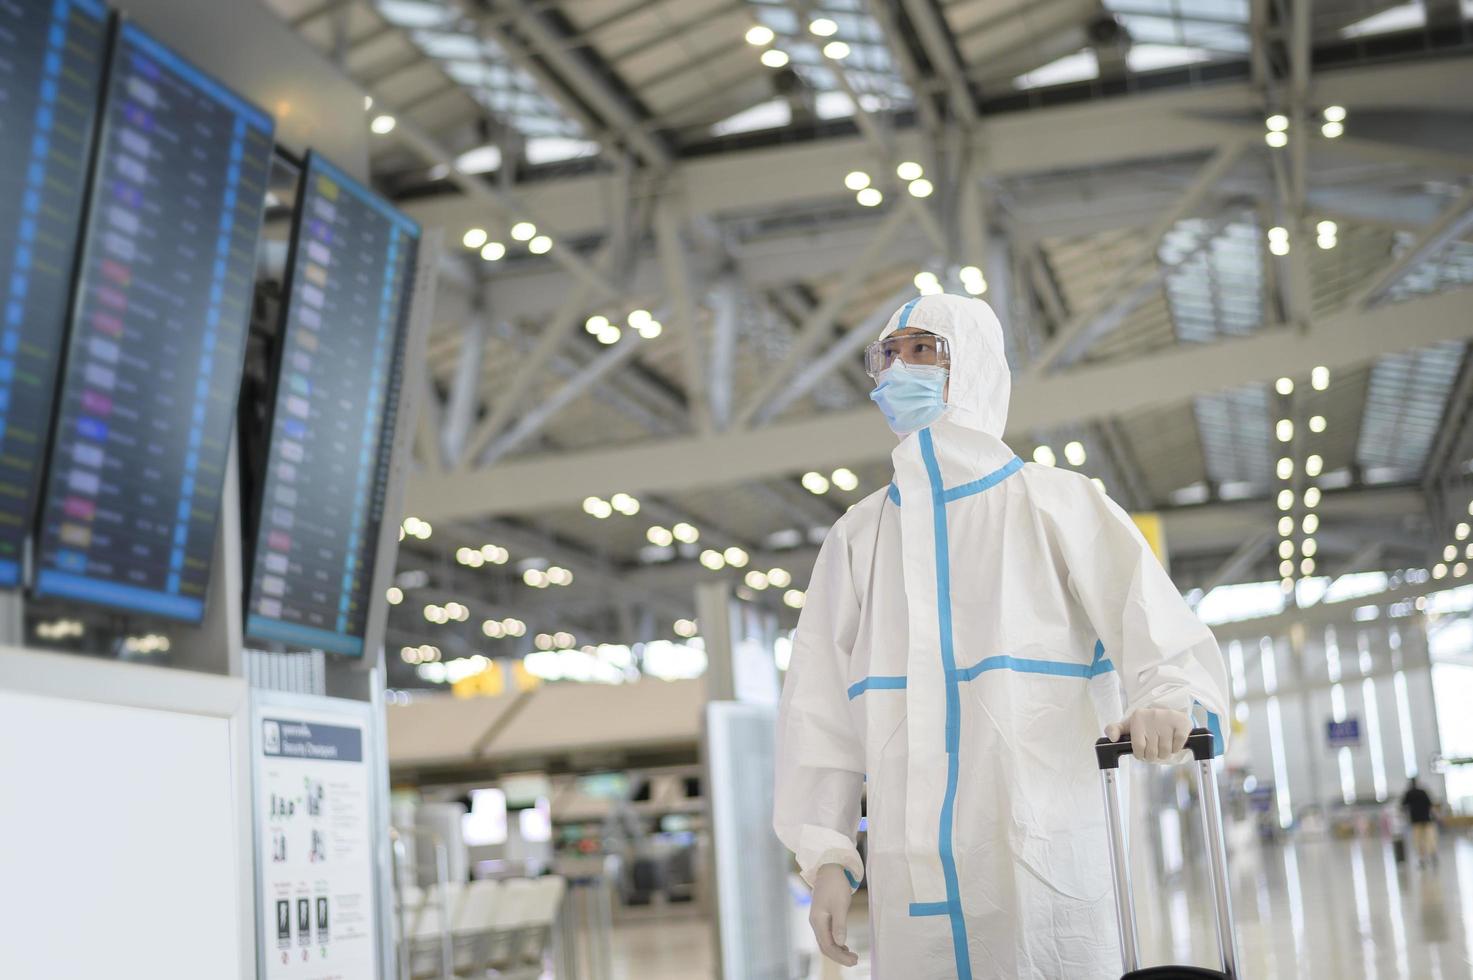 Ein asiatischer Mann trägt einen PSA-Anzug auf dem internationalen Flughafen, Sicherheitsreisen, Covid-19-Schutz, Konzept der sozialen Distanzierung foto